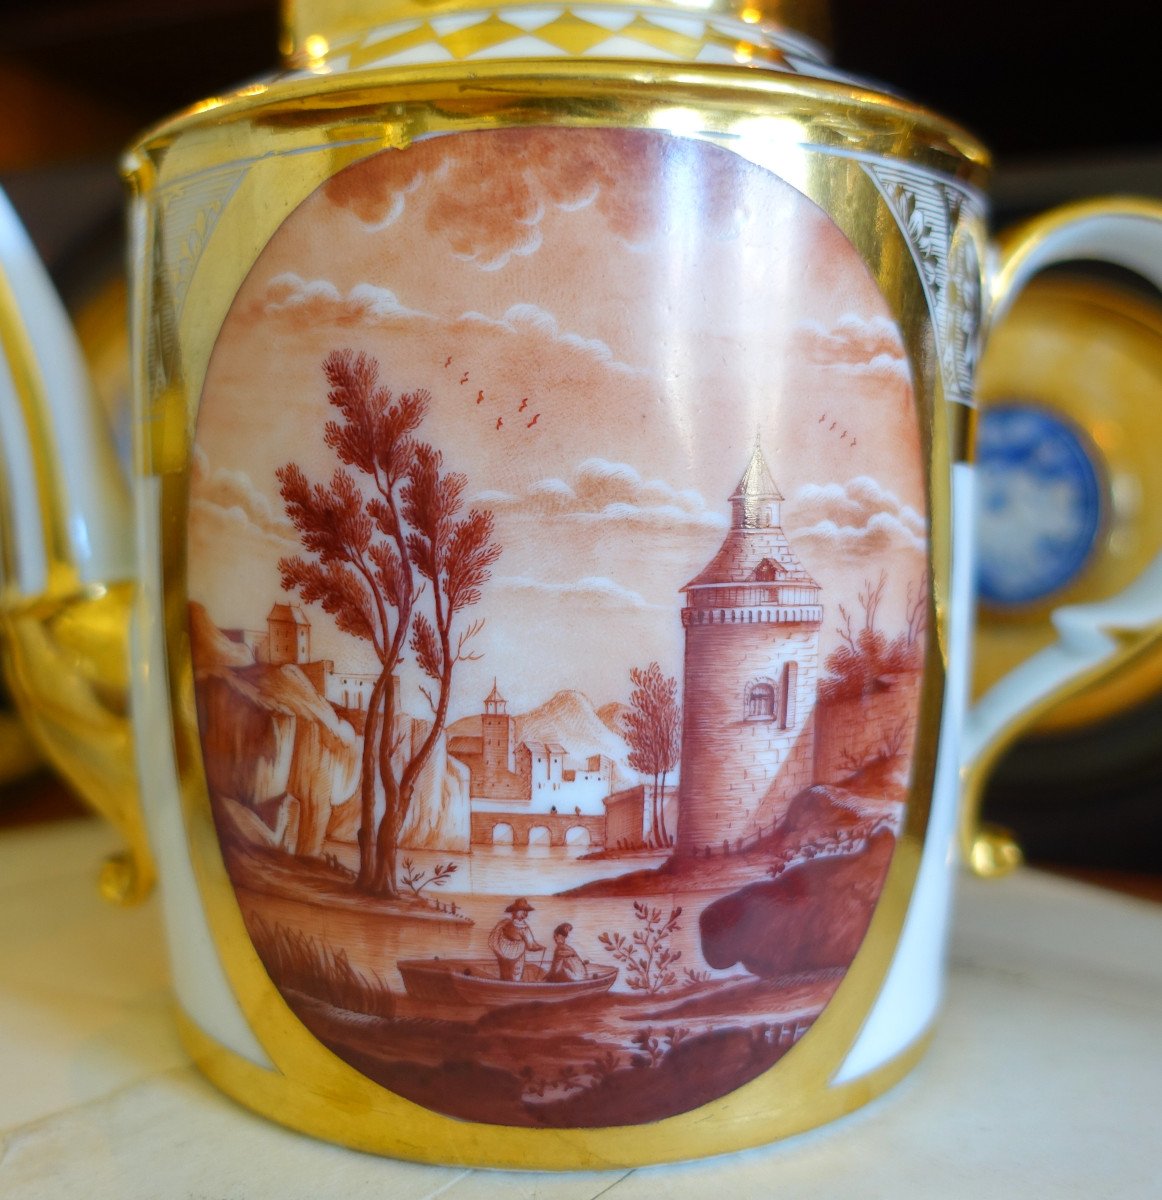 Schoelcher Manufacture - Directoire Empire Period Porcelain Teapot - Camaieu Landscapes-photo-1